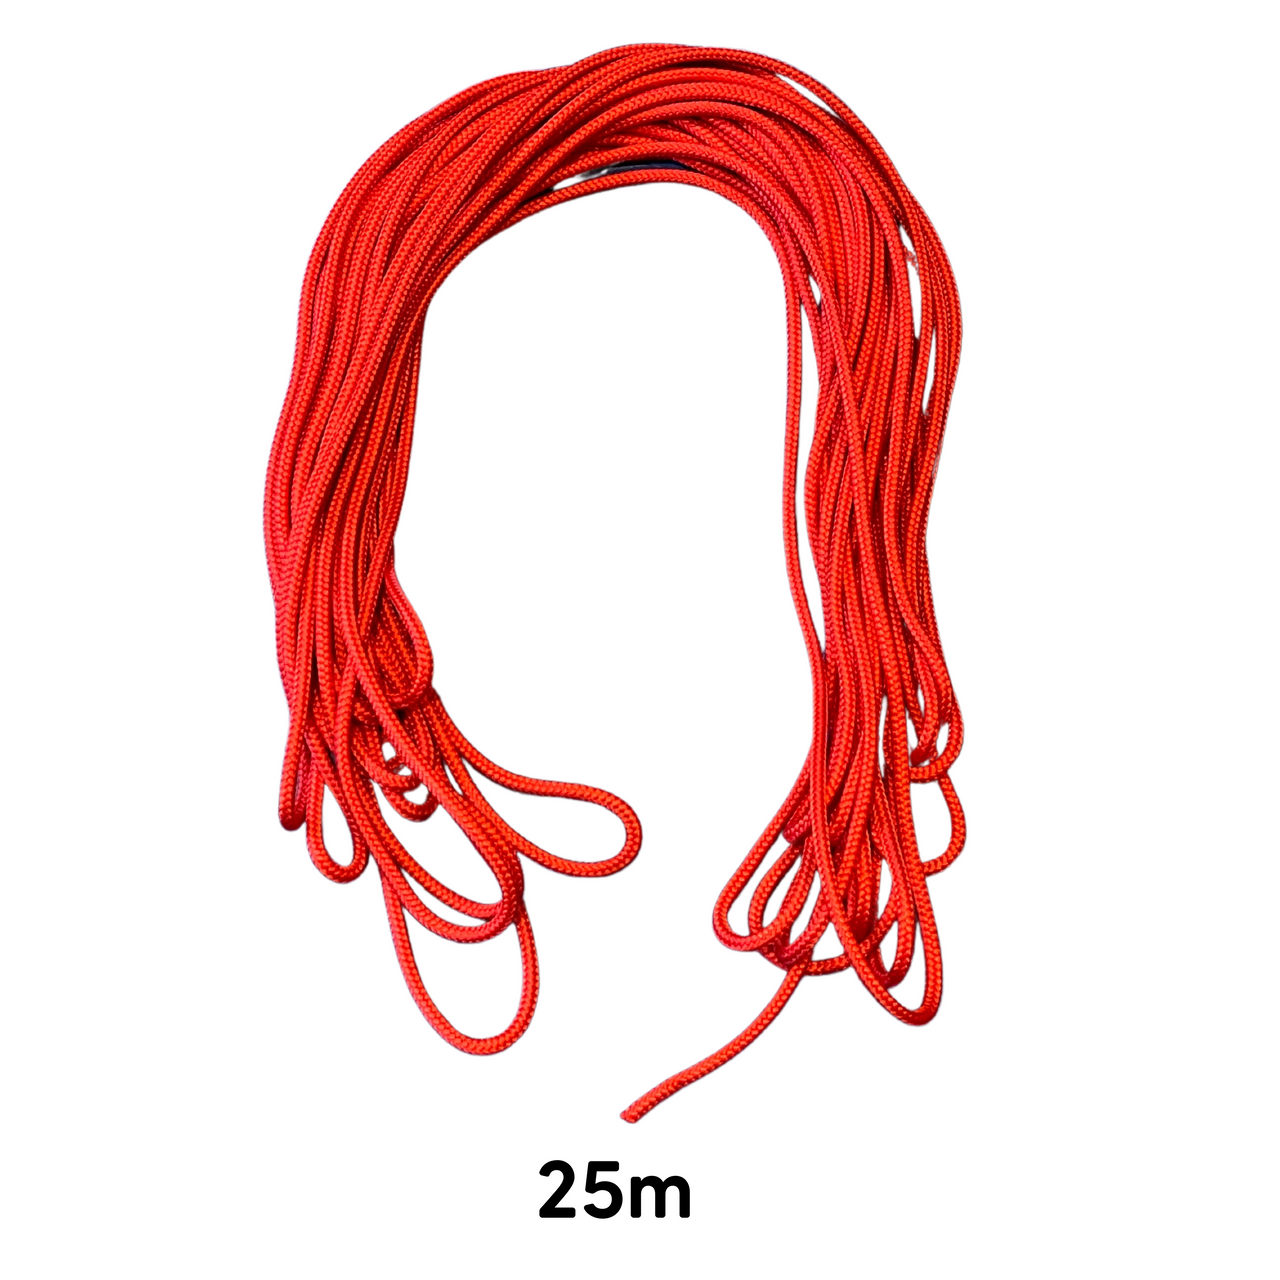 Corde - corde thérapeutique - "fil rouge" - 15m